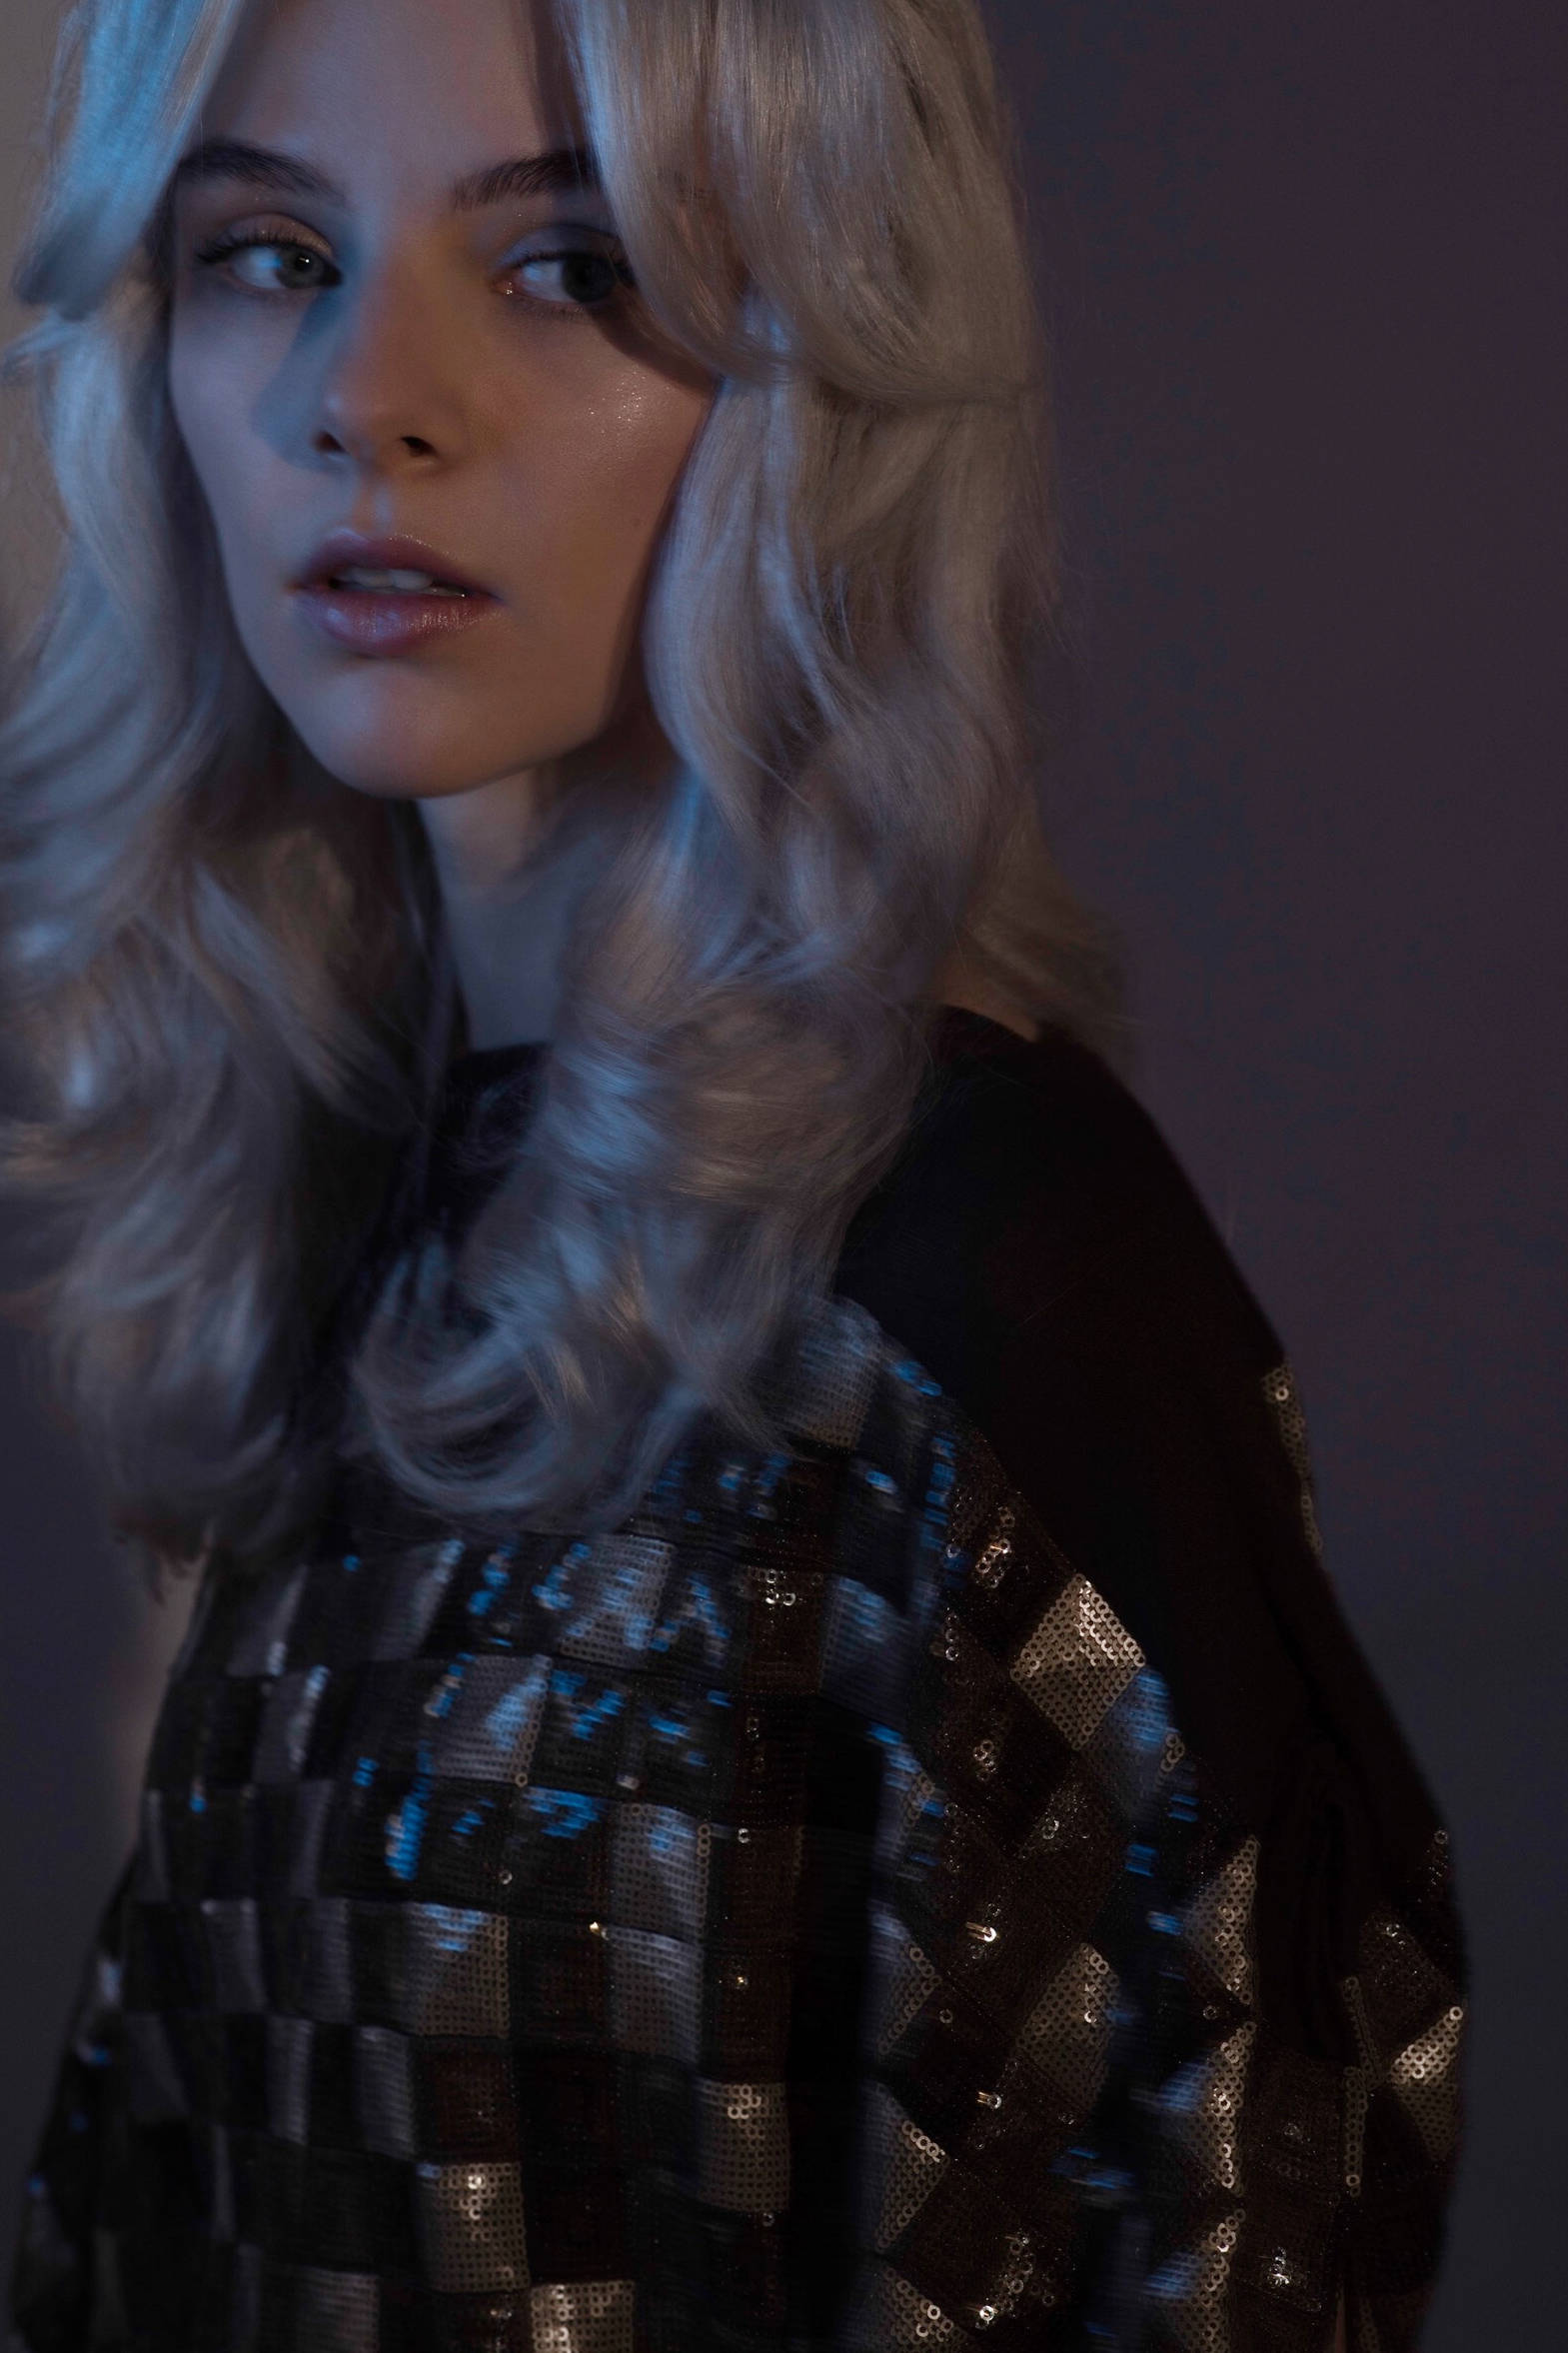 Model mit hellblonden, voluminösen Retro-Locken und Make-up mit silbernem Glitter gestylt von Hair & Make-up Artist Eva Gerholdt